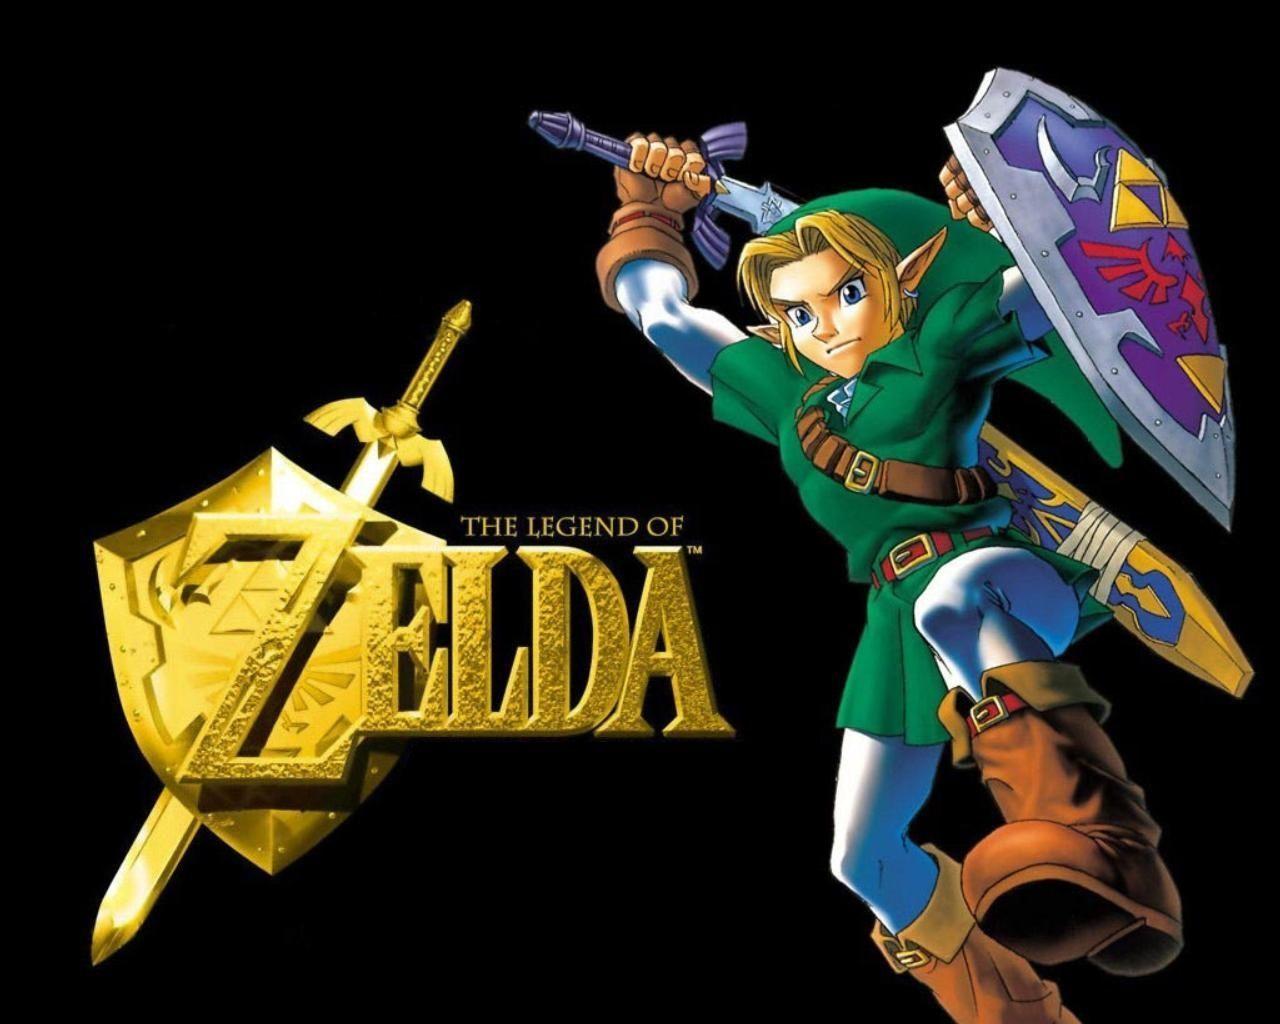 The Legend of Zelda Wallpaper (1280 x 1024 Pixels)